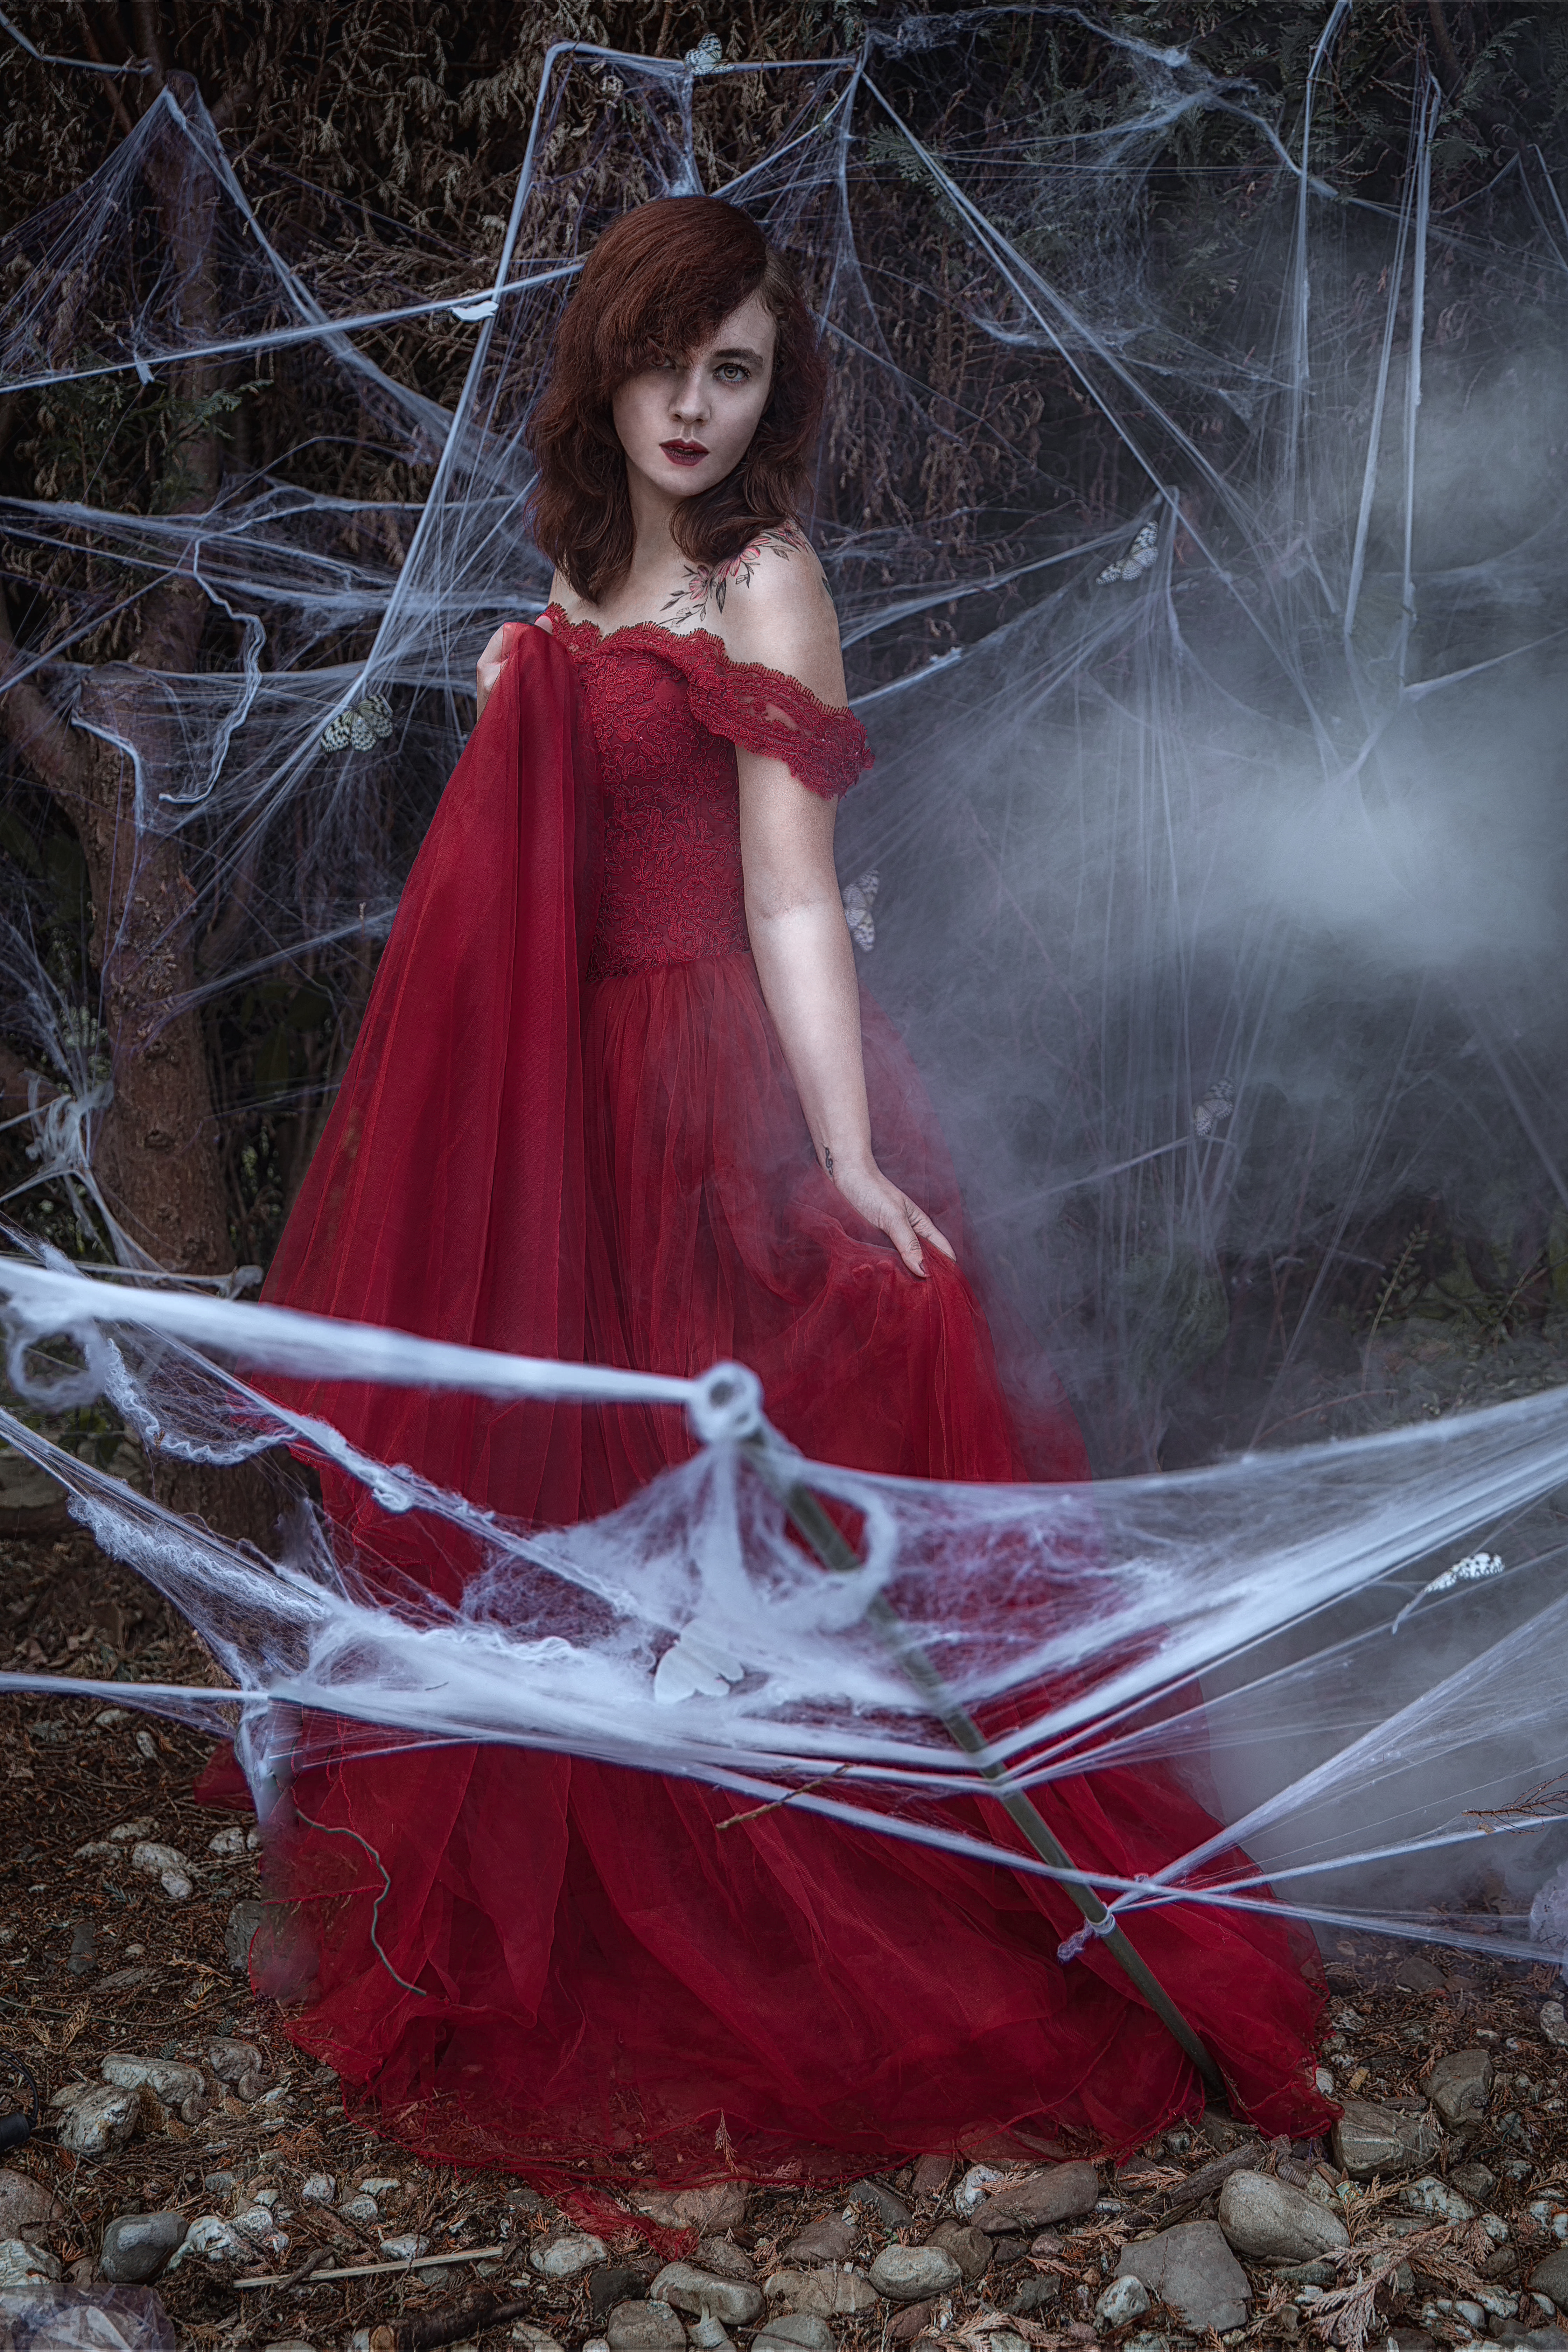 Nadine steht umgeben von Spinnennetzen in einem roten Ballkleid im freien. Ein Teil des Kleides ist in einer Hand zur Brust gezogen. Den anderen Teil des kleides hält sie in der anderen Hand leicht hoch.